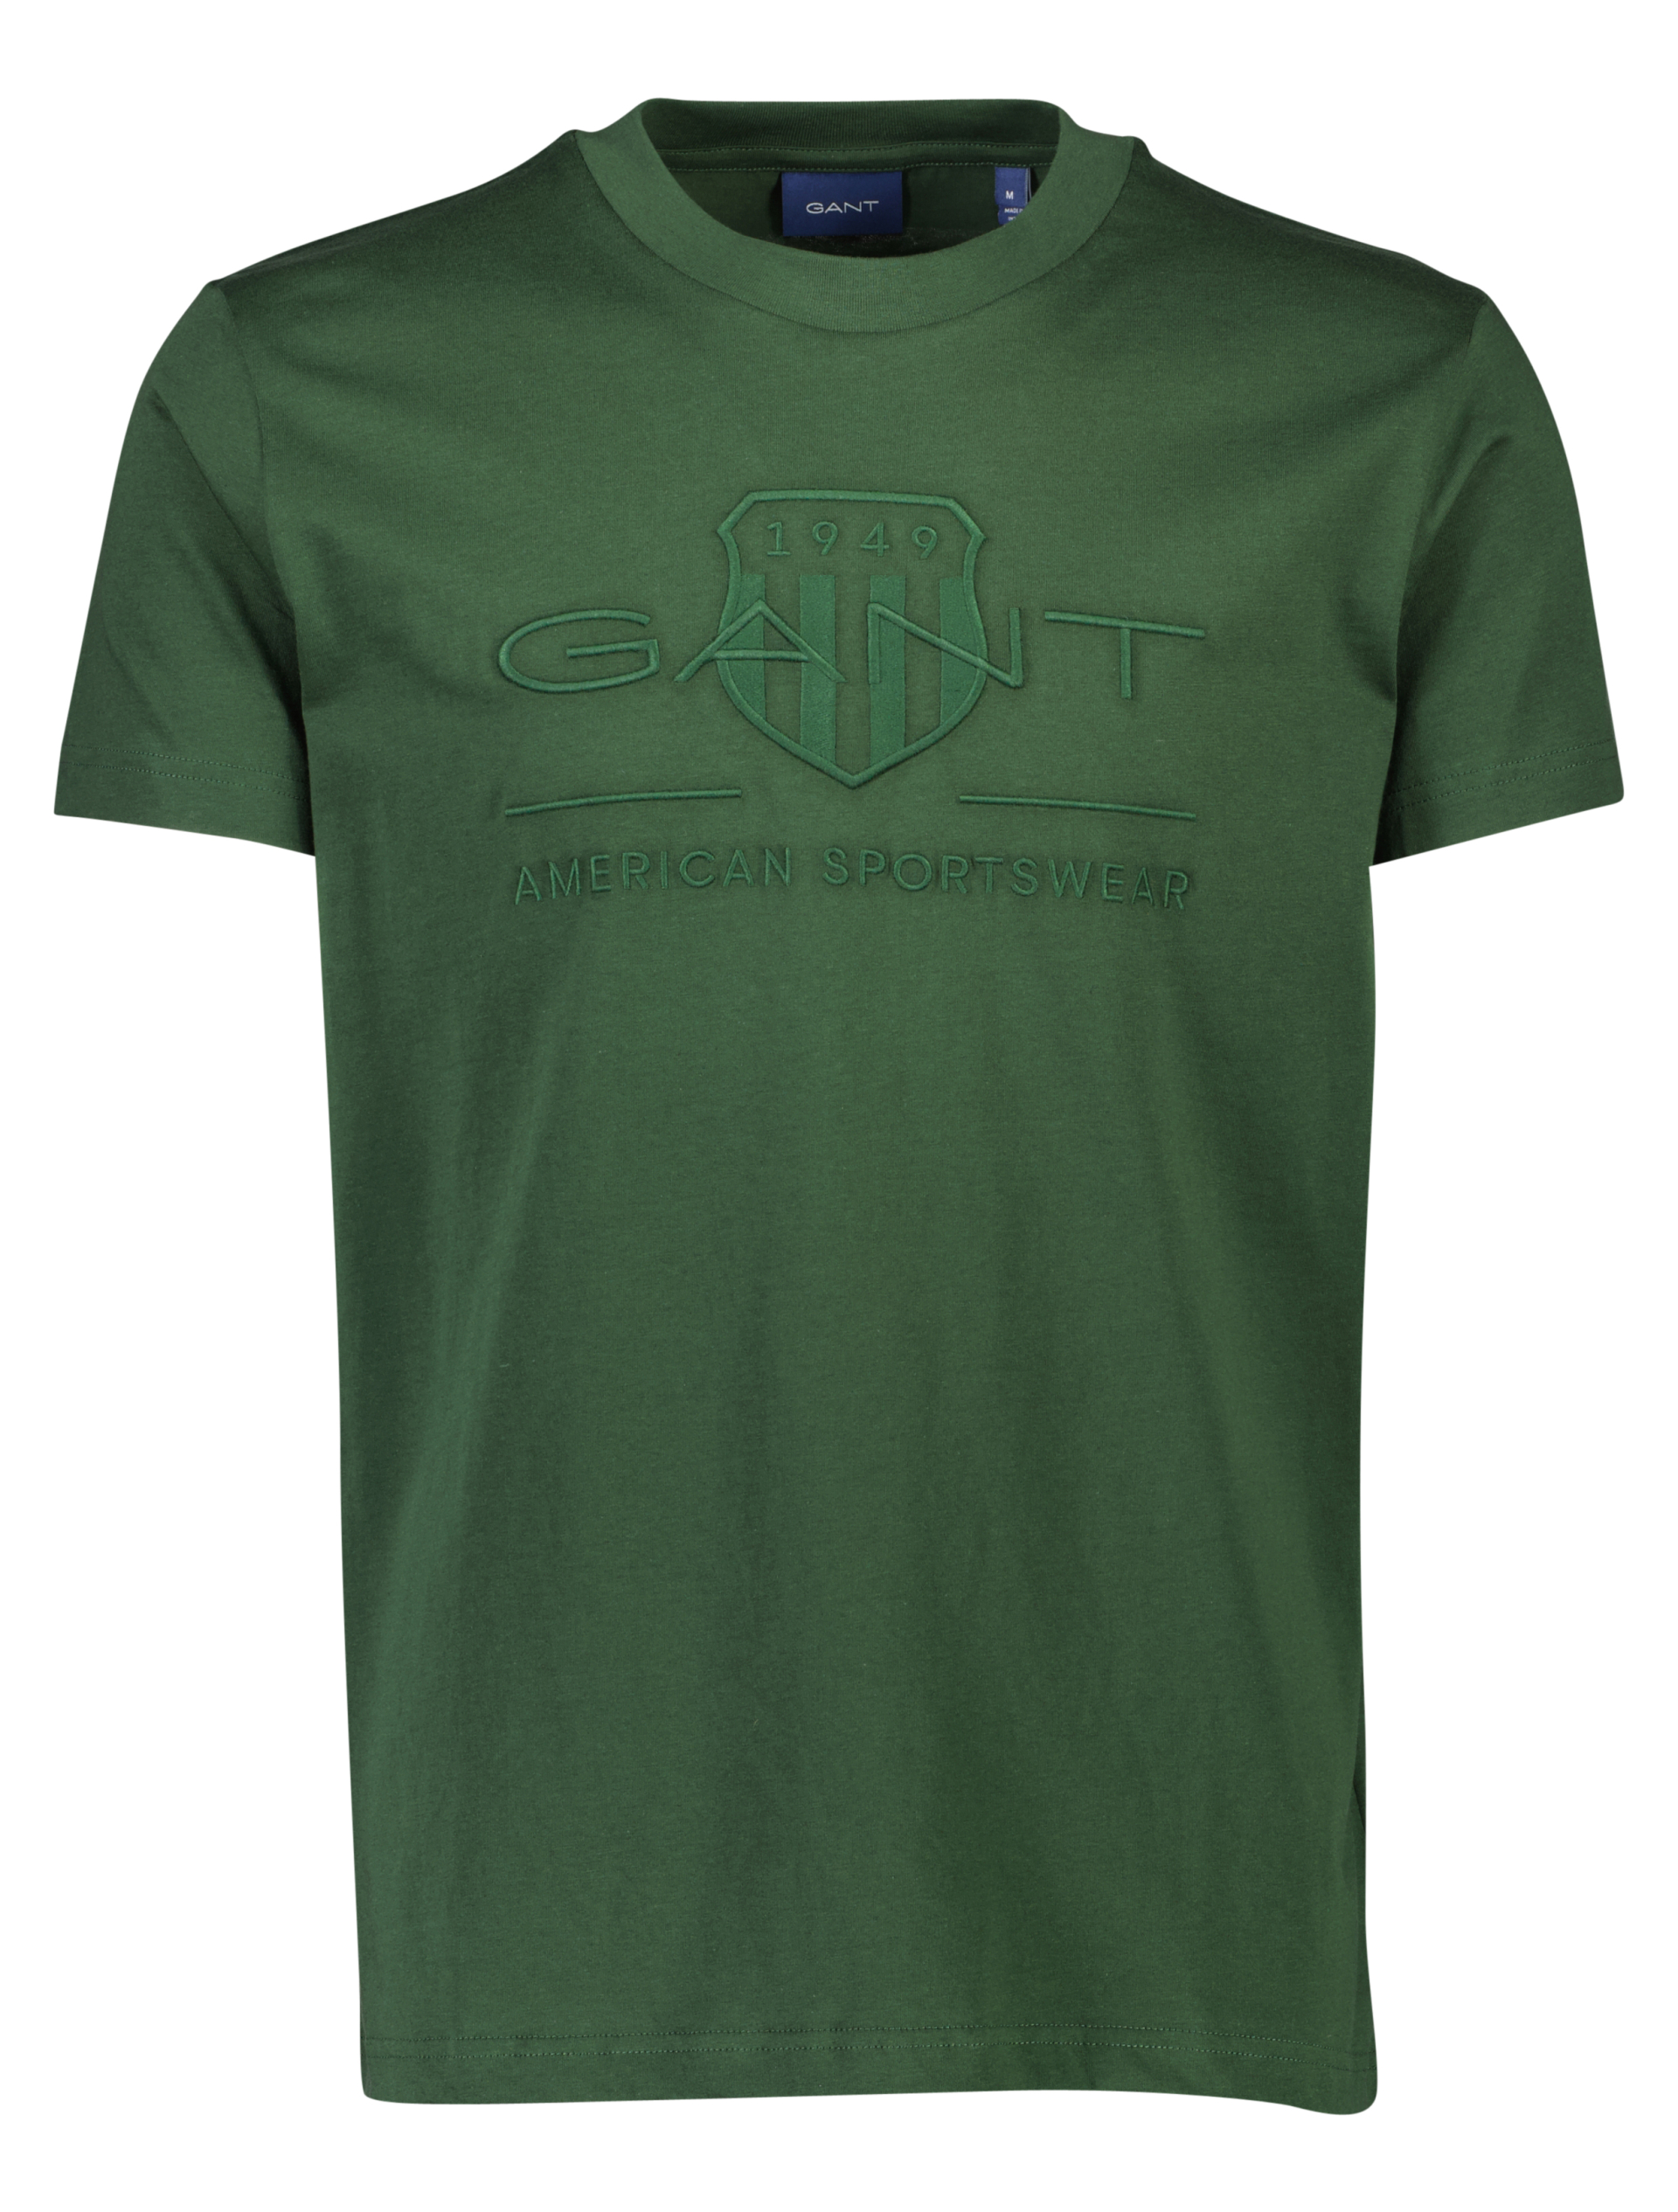 Gant T-shirt grøn / 363 storm green